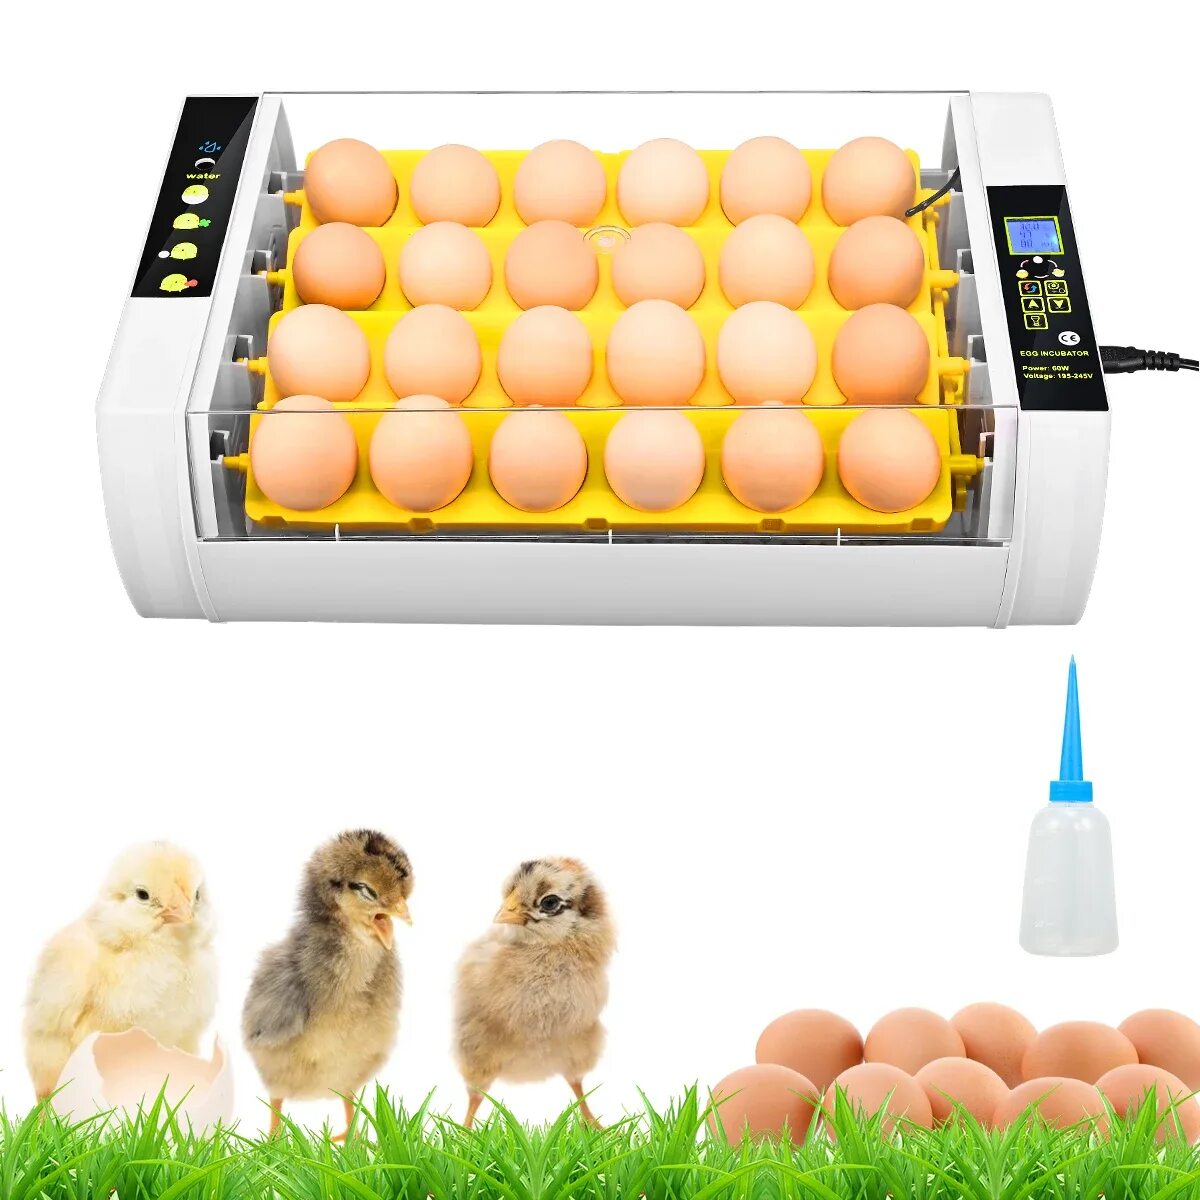 Инкубаторы для яиц автоматические купить на озоне. Инкубатор Egg incubator. Инкубатор для яиц Egg incubator QC Pass 04. Fully Automatic Egg incubator. Инкубатор для яиц fully Automatic Egg Incubato.